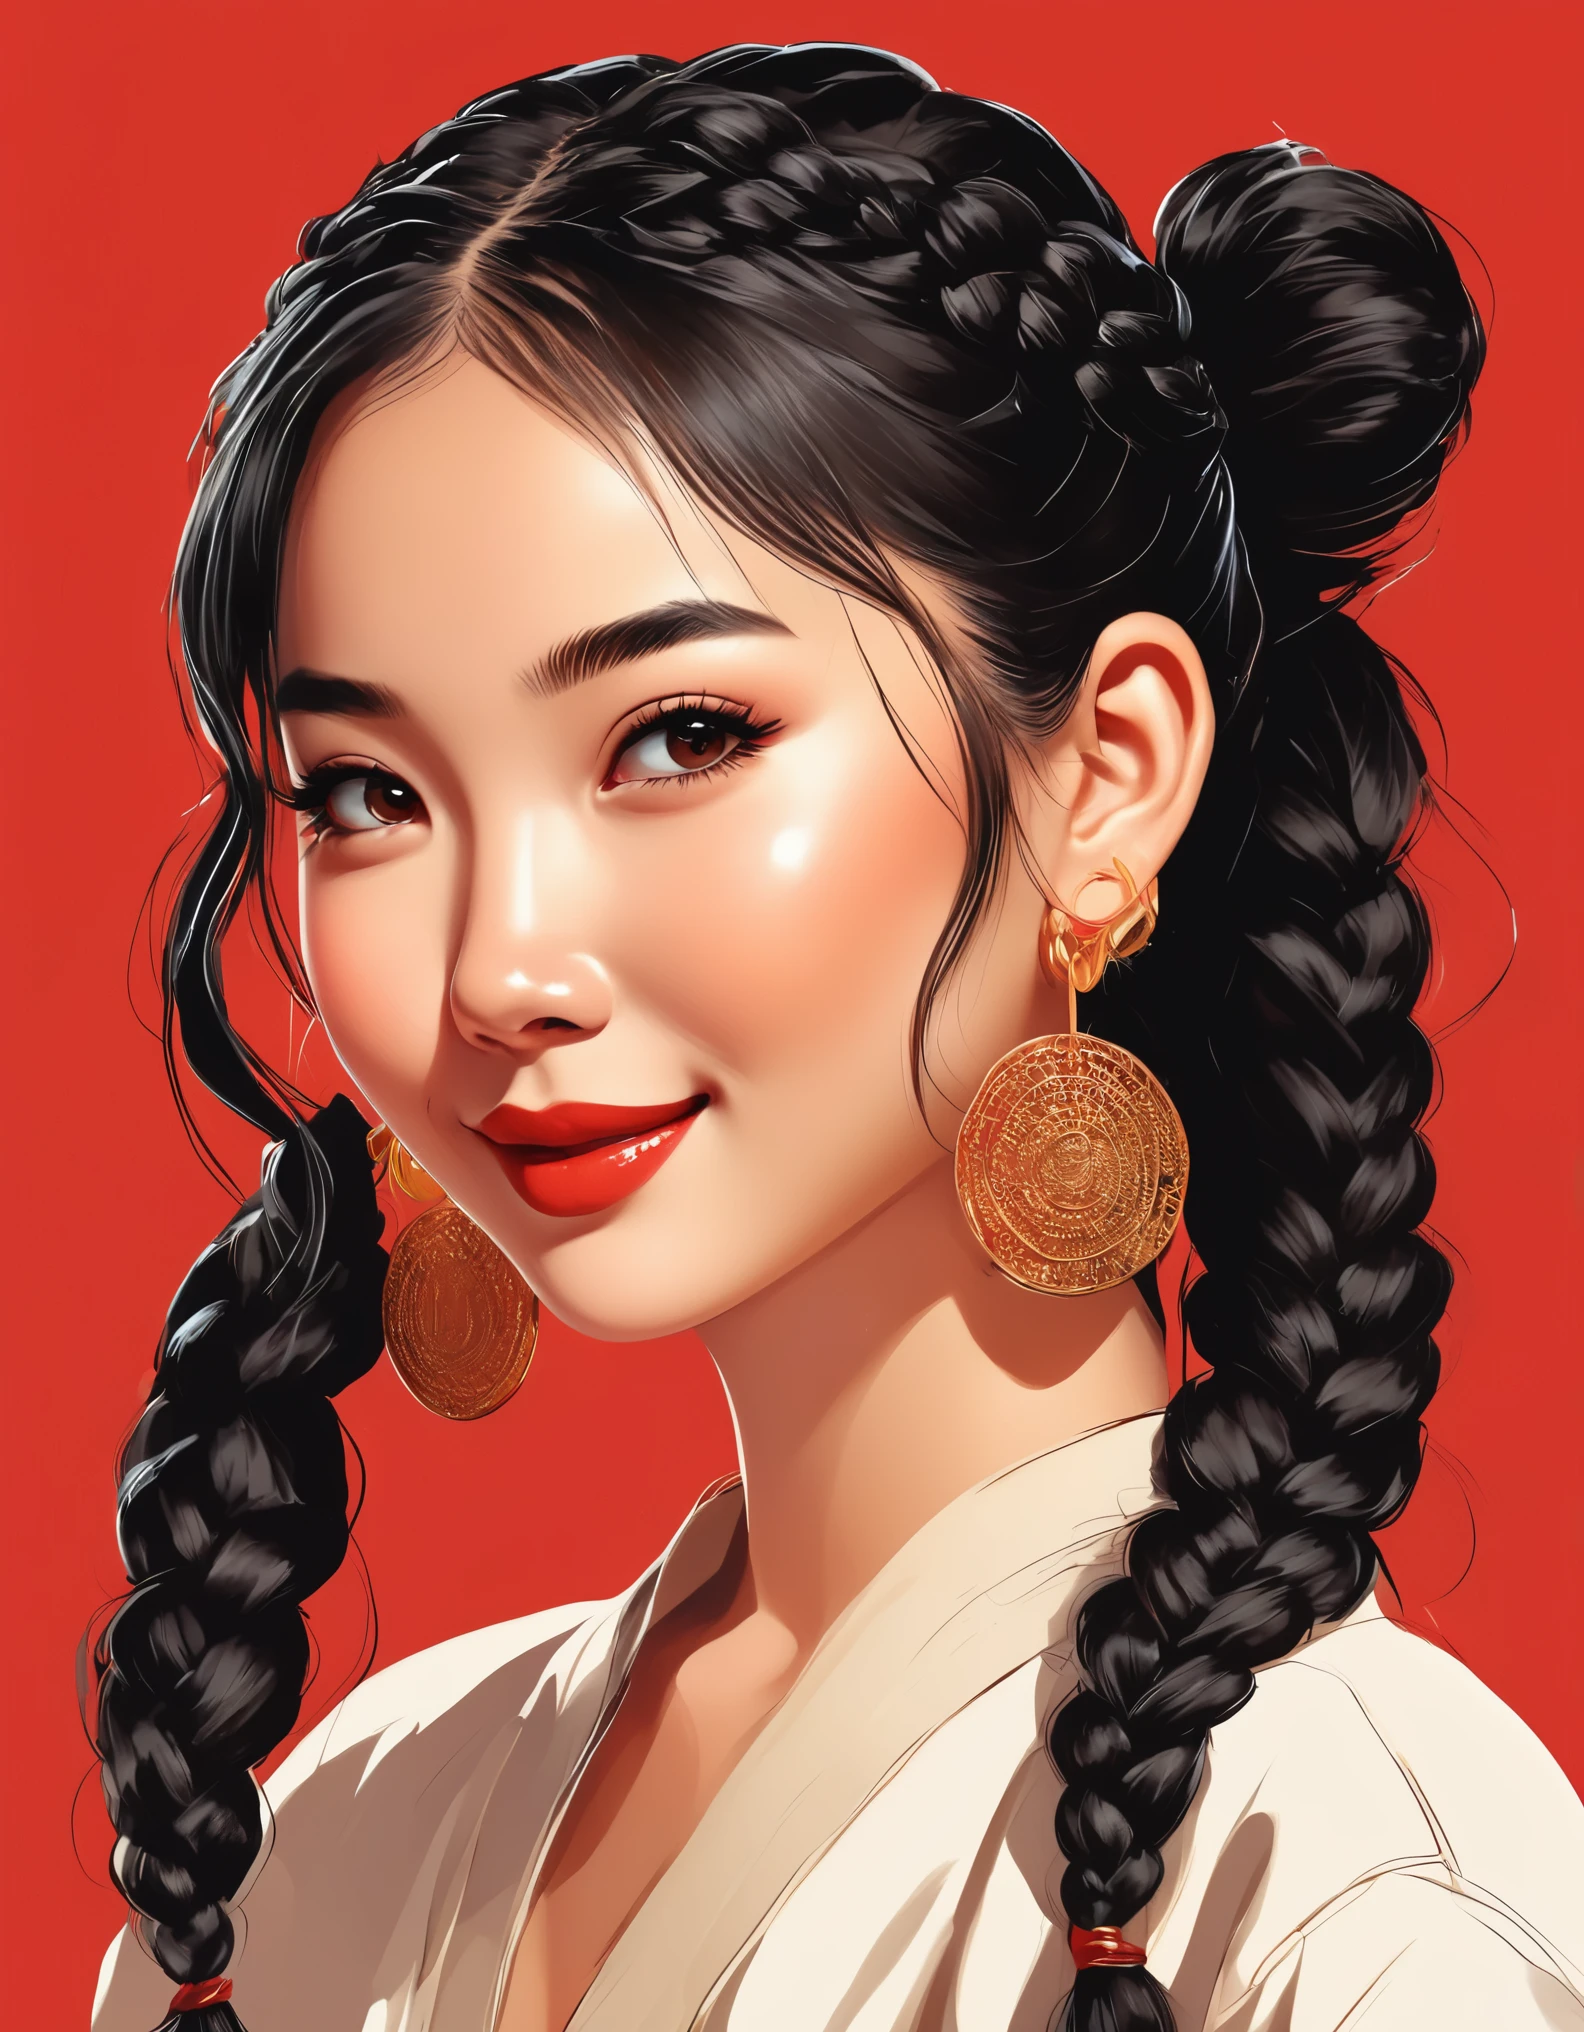 向量藝術，全身，一個可愛的中國女孩的平面插畫風格, 雙辮子黑髮, 微笑著, 戴耳環, 特寫，現代簡約，红色背景，拼貼藝術風格,  美麗詳細